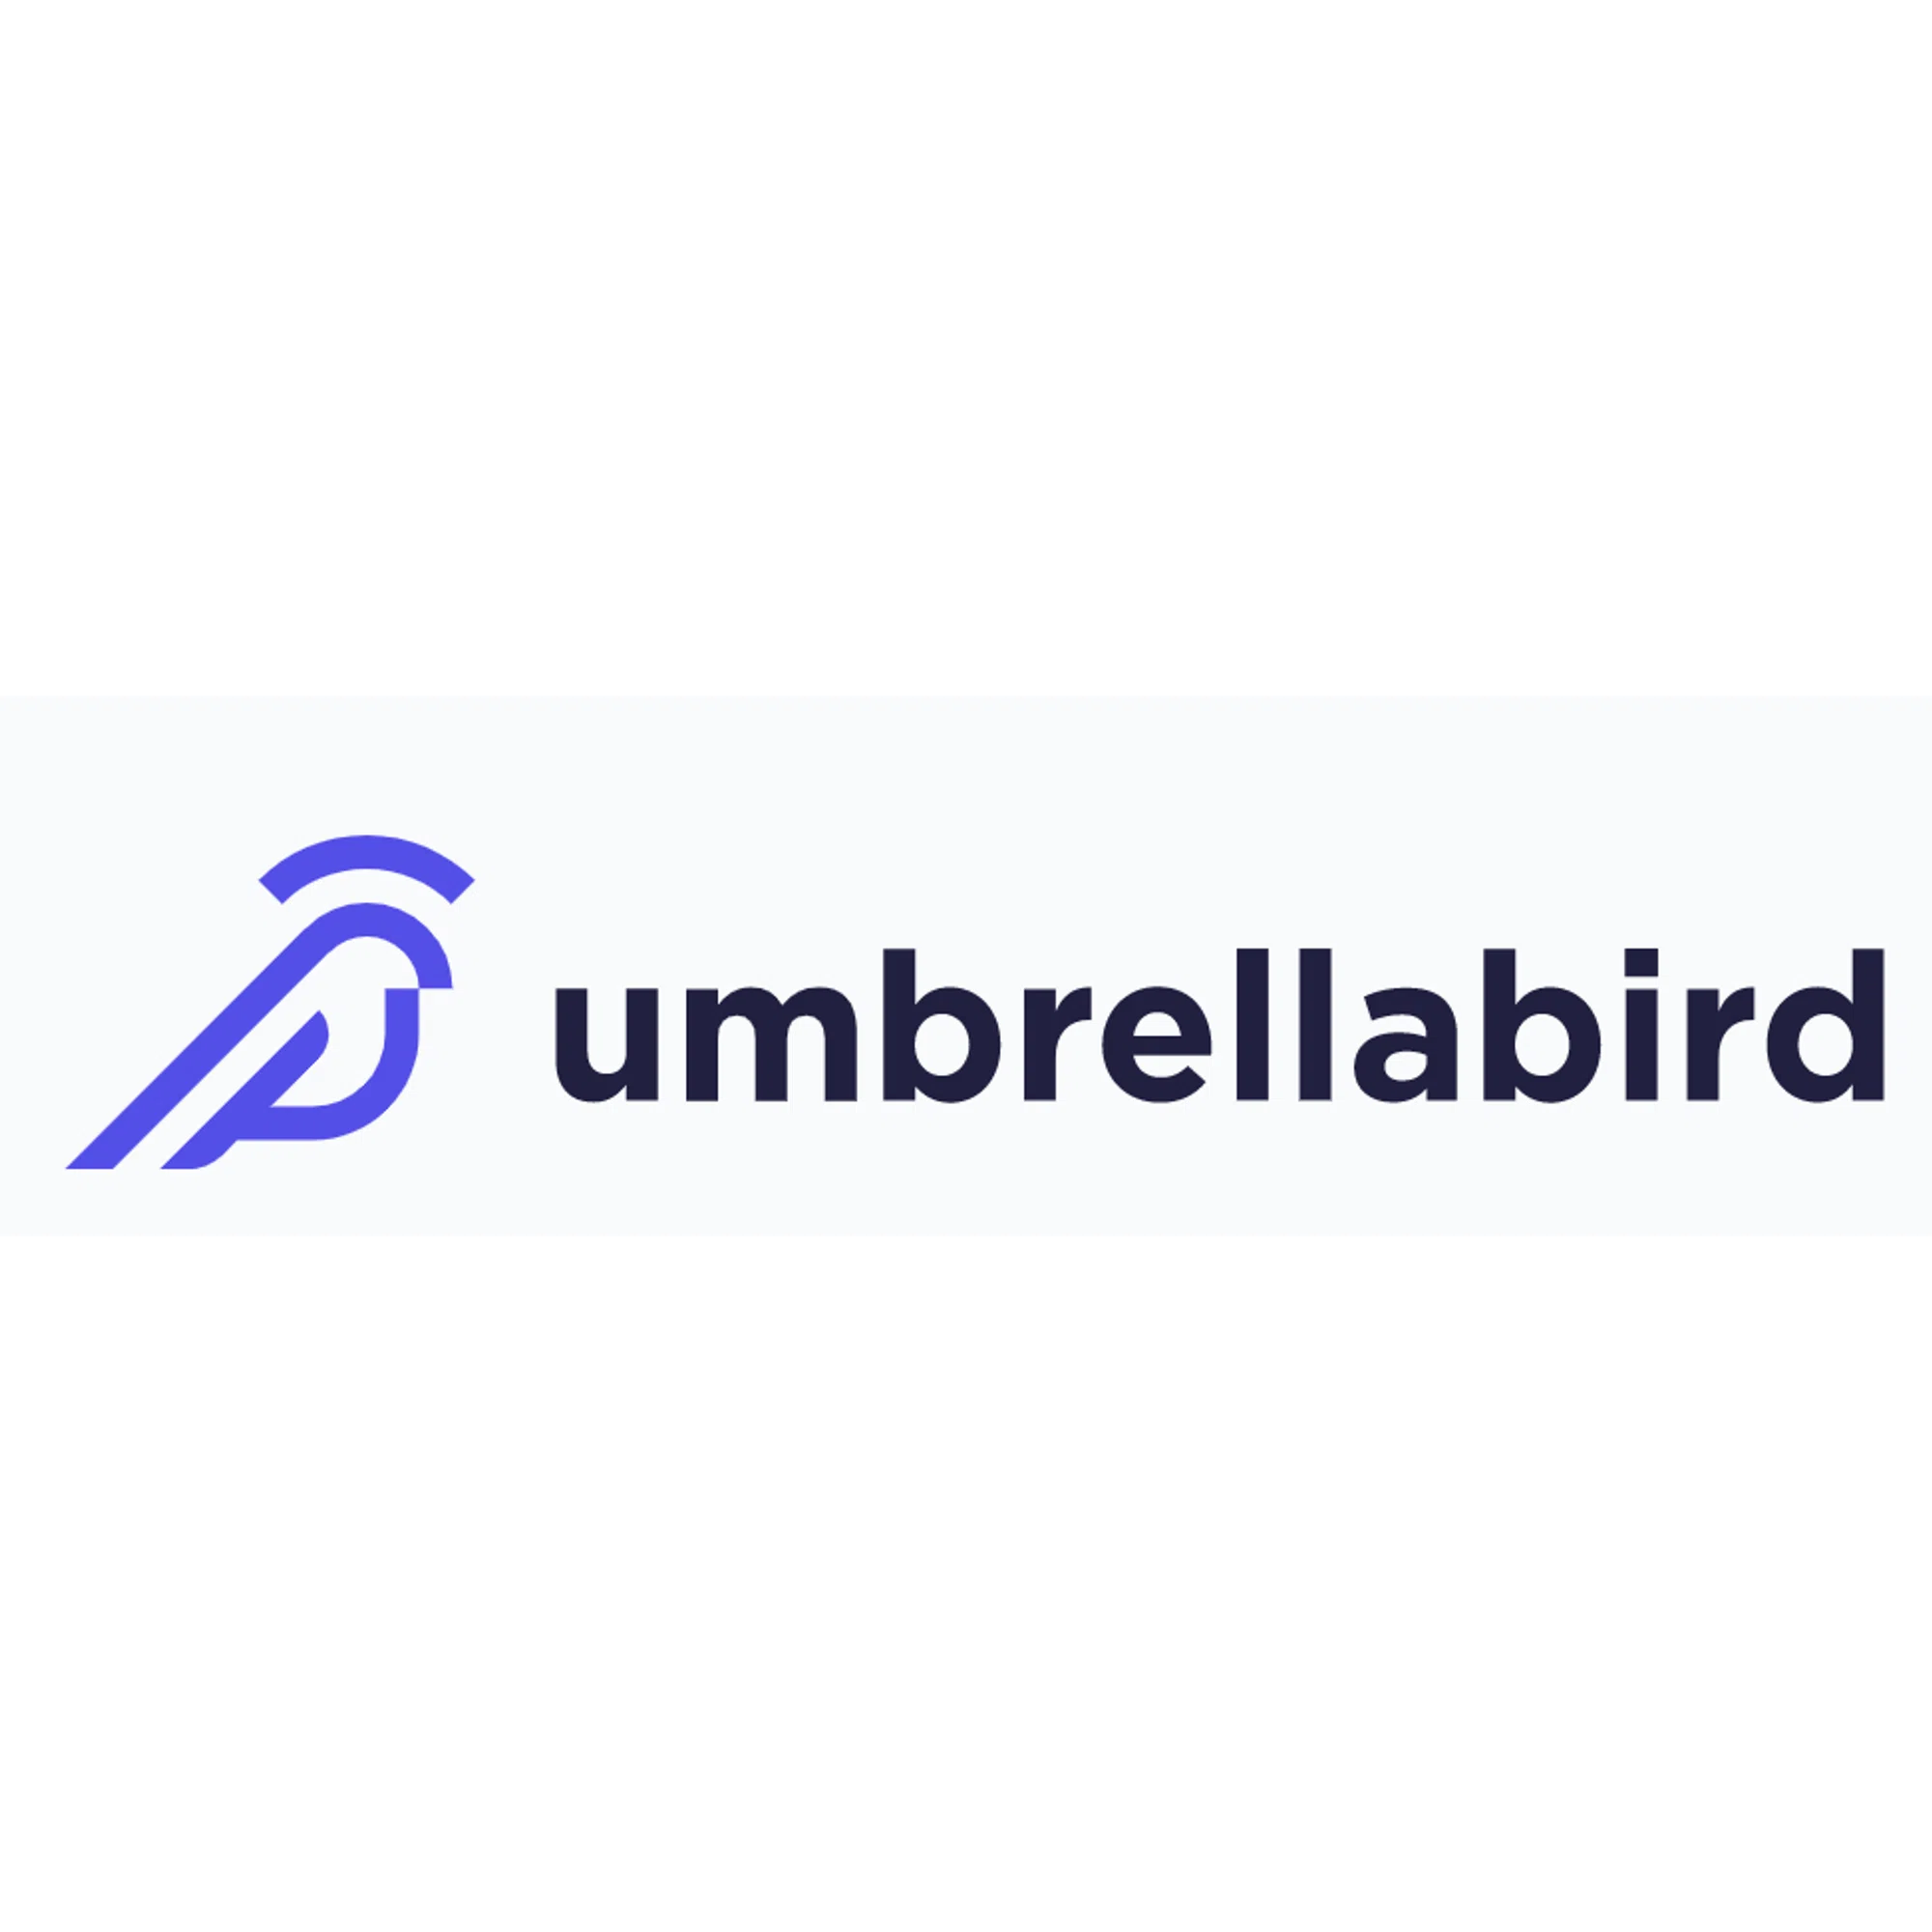 umbrellabird.com logo